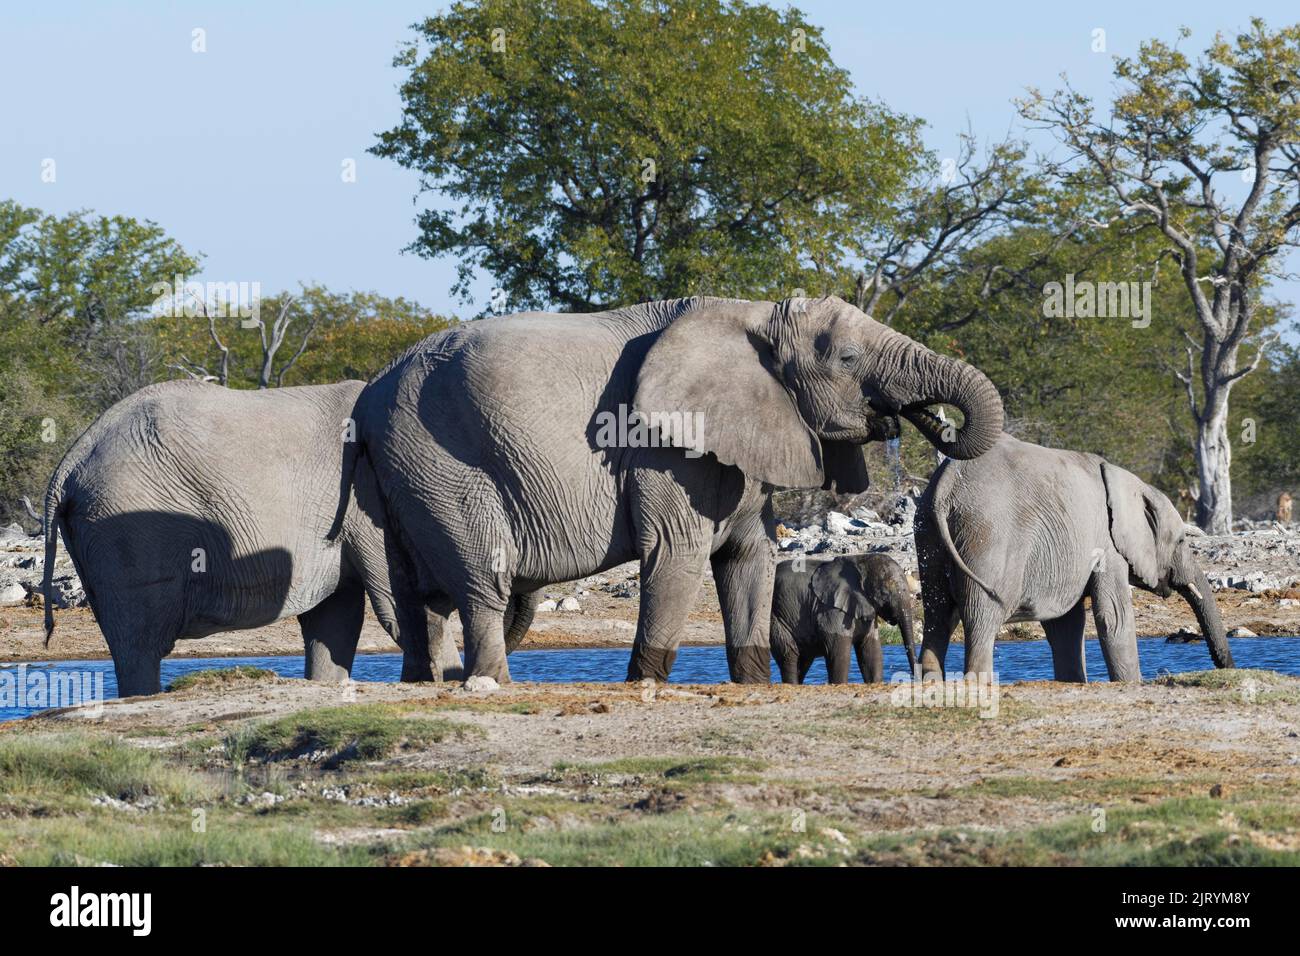 Éléphants de brousse africains (Loxodonta africana), troupeau avec bébé éléphant buvant dans un trou d'eau, Parc national d'Etosha, Namibie, Afrique Banque D'Images